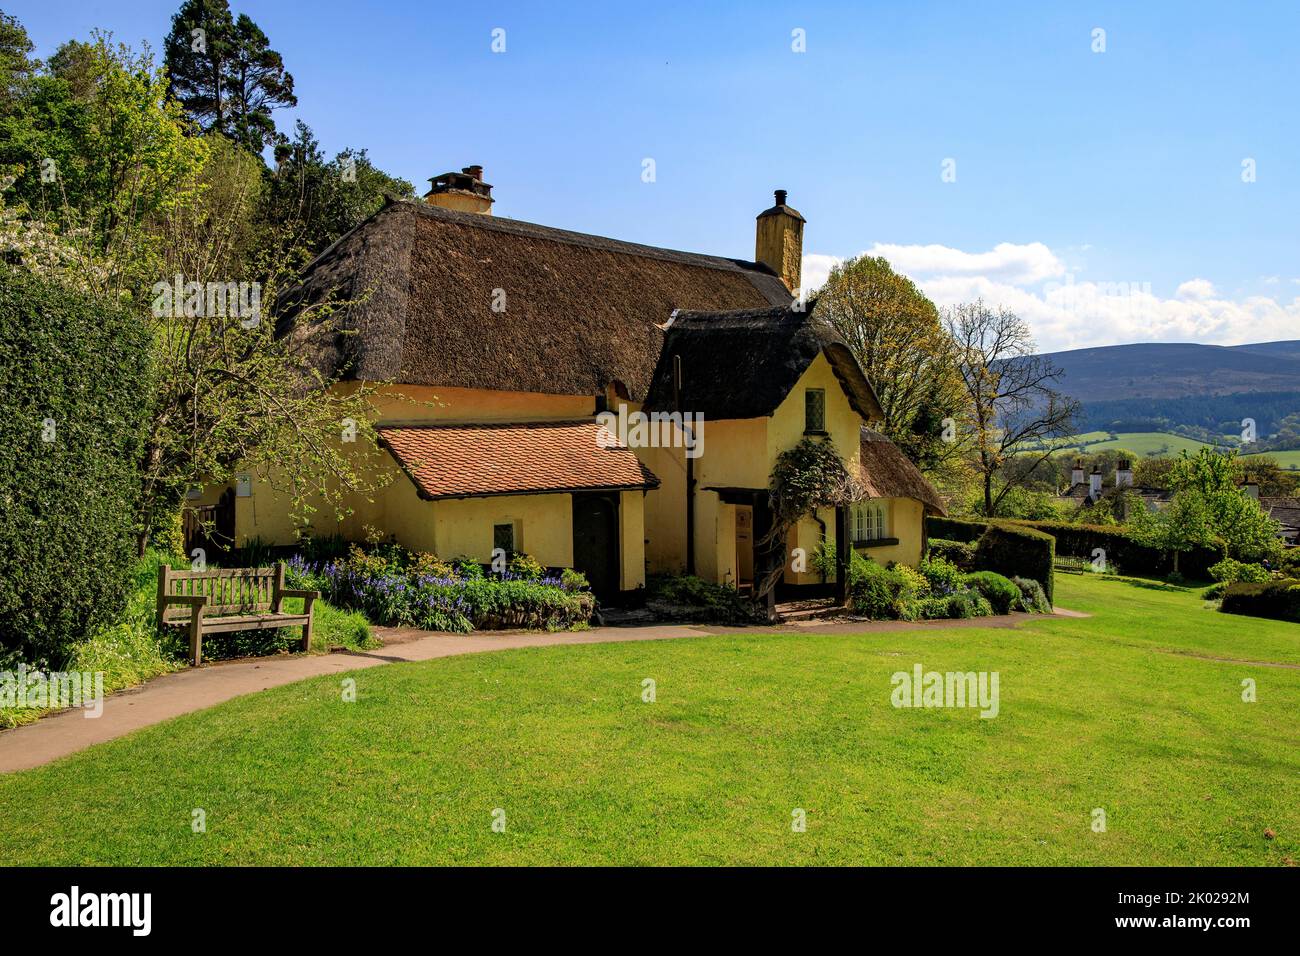 Périwinkle Cottage est un charmant cottage en chaume à Selworthy Green sur le domaine Holnicote, Somerset, Angleterre, Royaume-Uni Banque D'Images